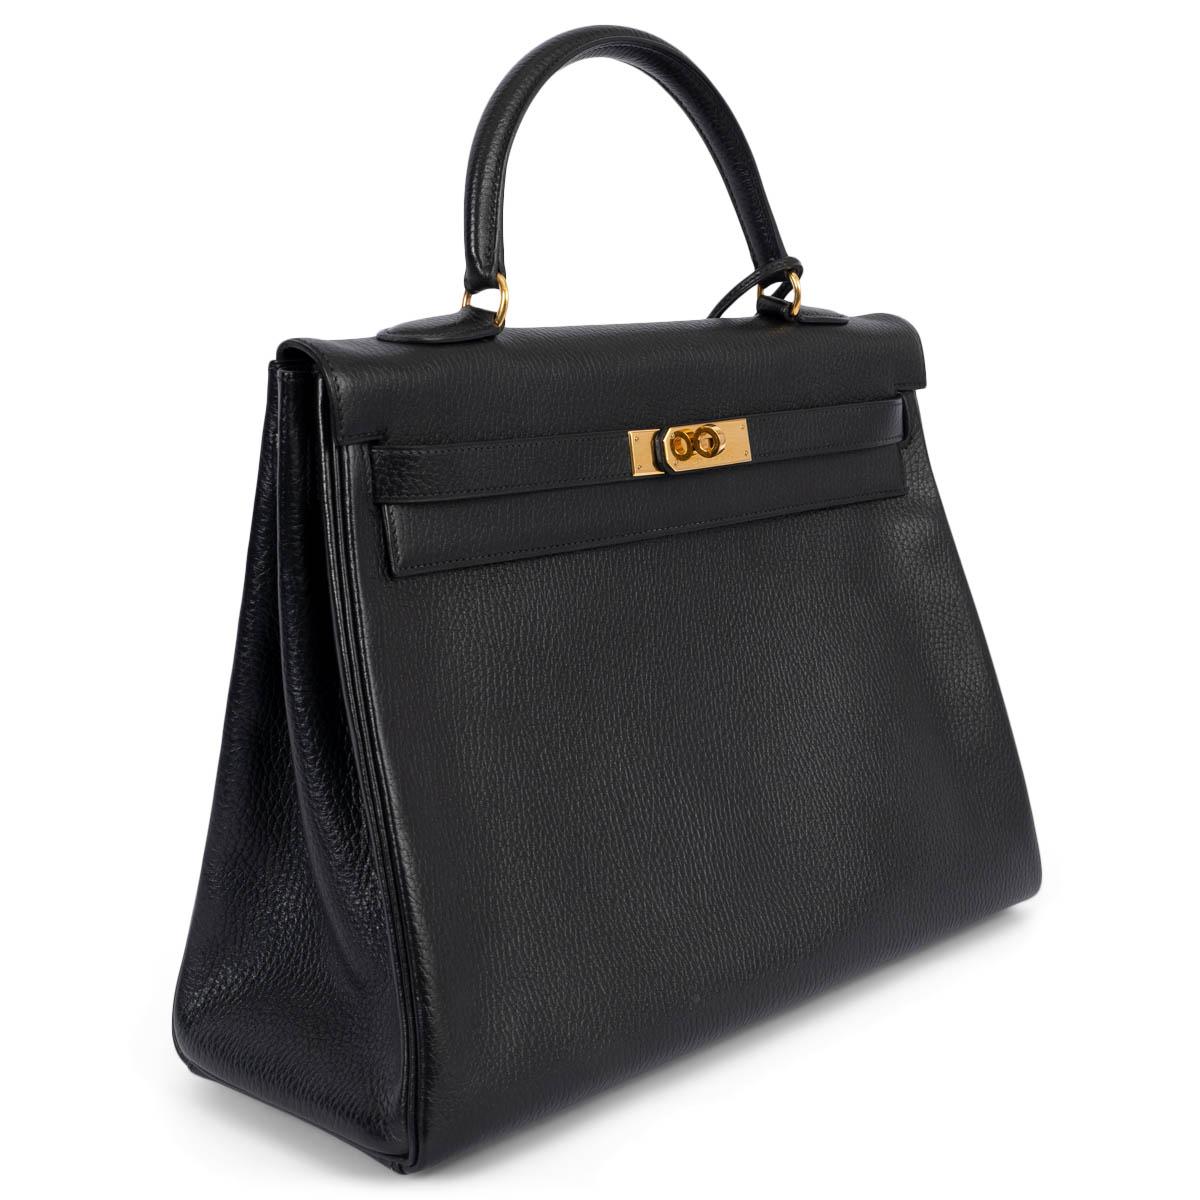 100% authentische Hermès Kelly 35 Retourne Tasche aus schwarzem Vache Grainee Leder mit goldfarbener Hardware. Gefüttert mit Chevre (Ziegenleder), mit zwei offenen Taschen auf der Vorderseite und einer Tasche mit Reißverschluss auf der Rückseite.